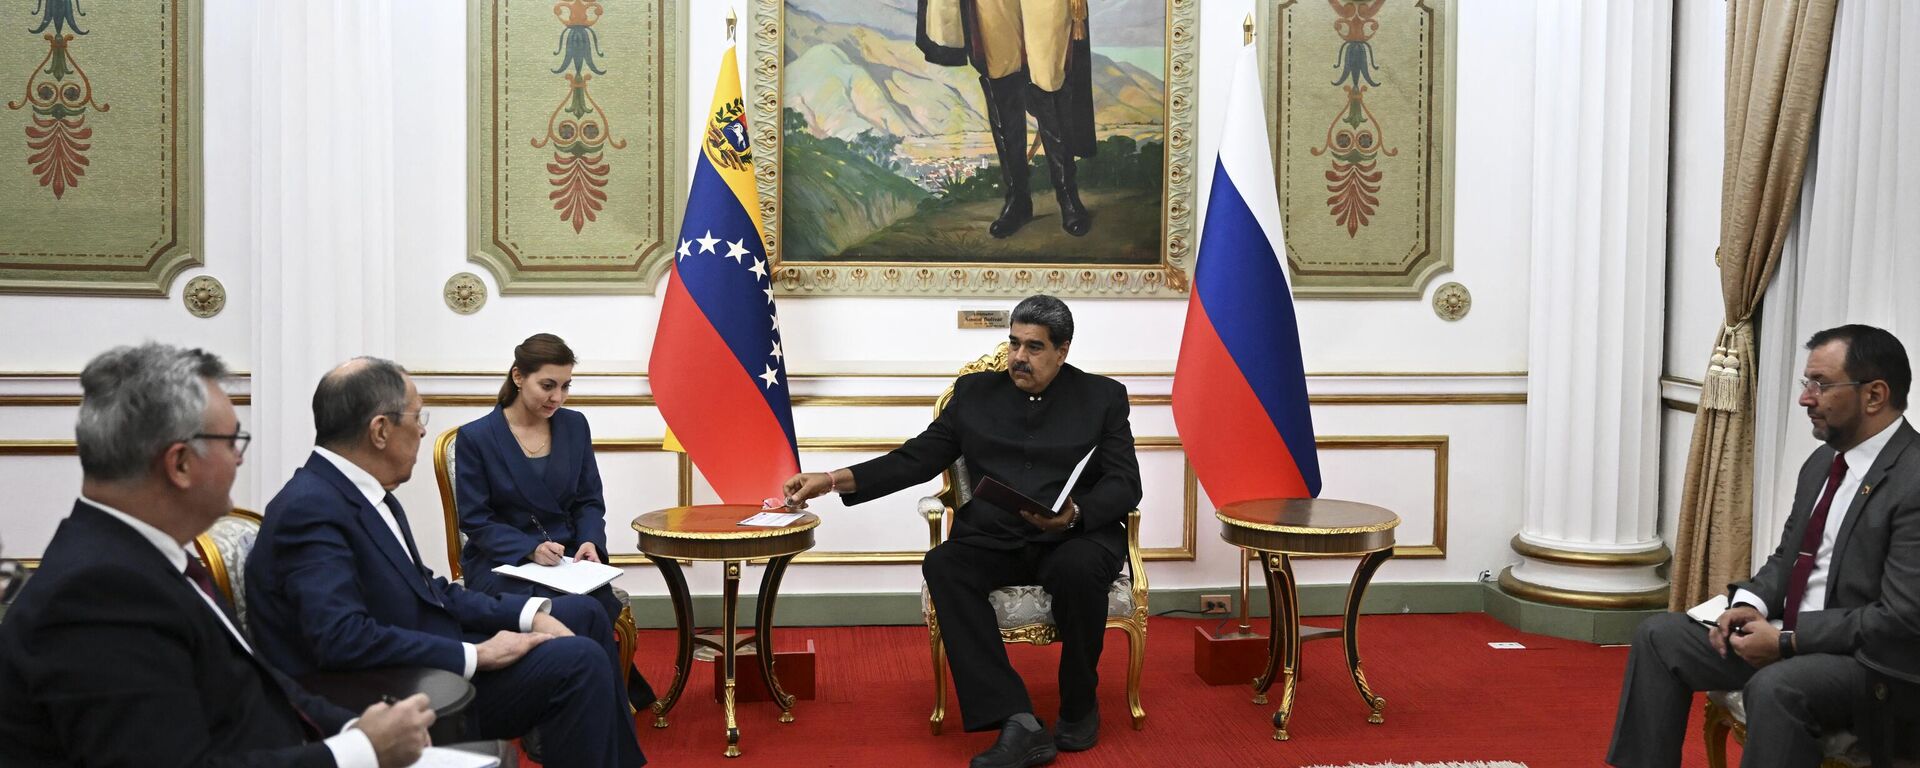 El ministro ruso de Asuntos Exteriores, Sergei Lavrov, y el presidente venezolano, Nicolás Maduro, hablan durante una reunión en el Palacio Presidencial de Miraflores, en Caracas, el 18 de abril de 2023. - Sputnik Mundo, 1920, 19.04.2023